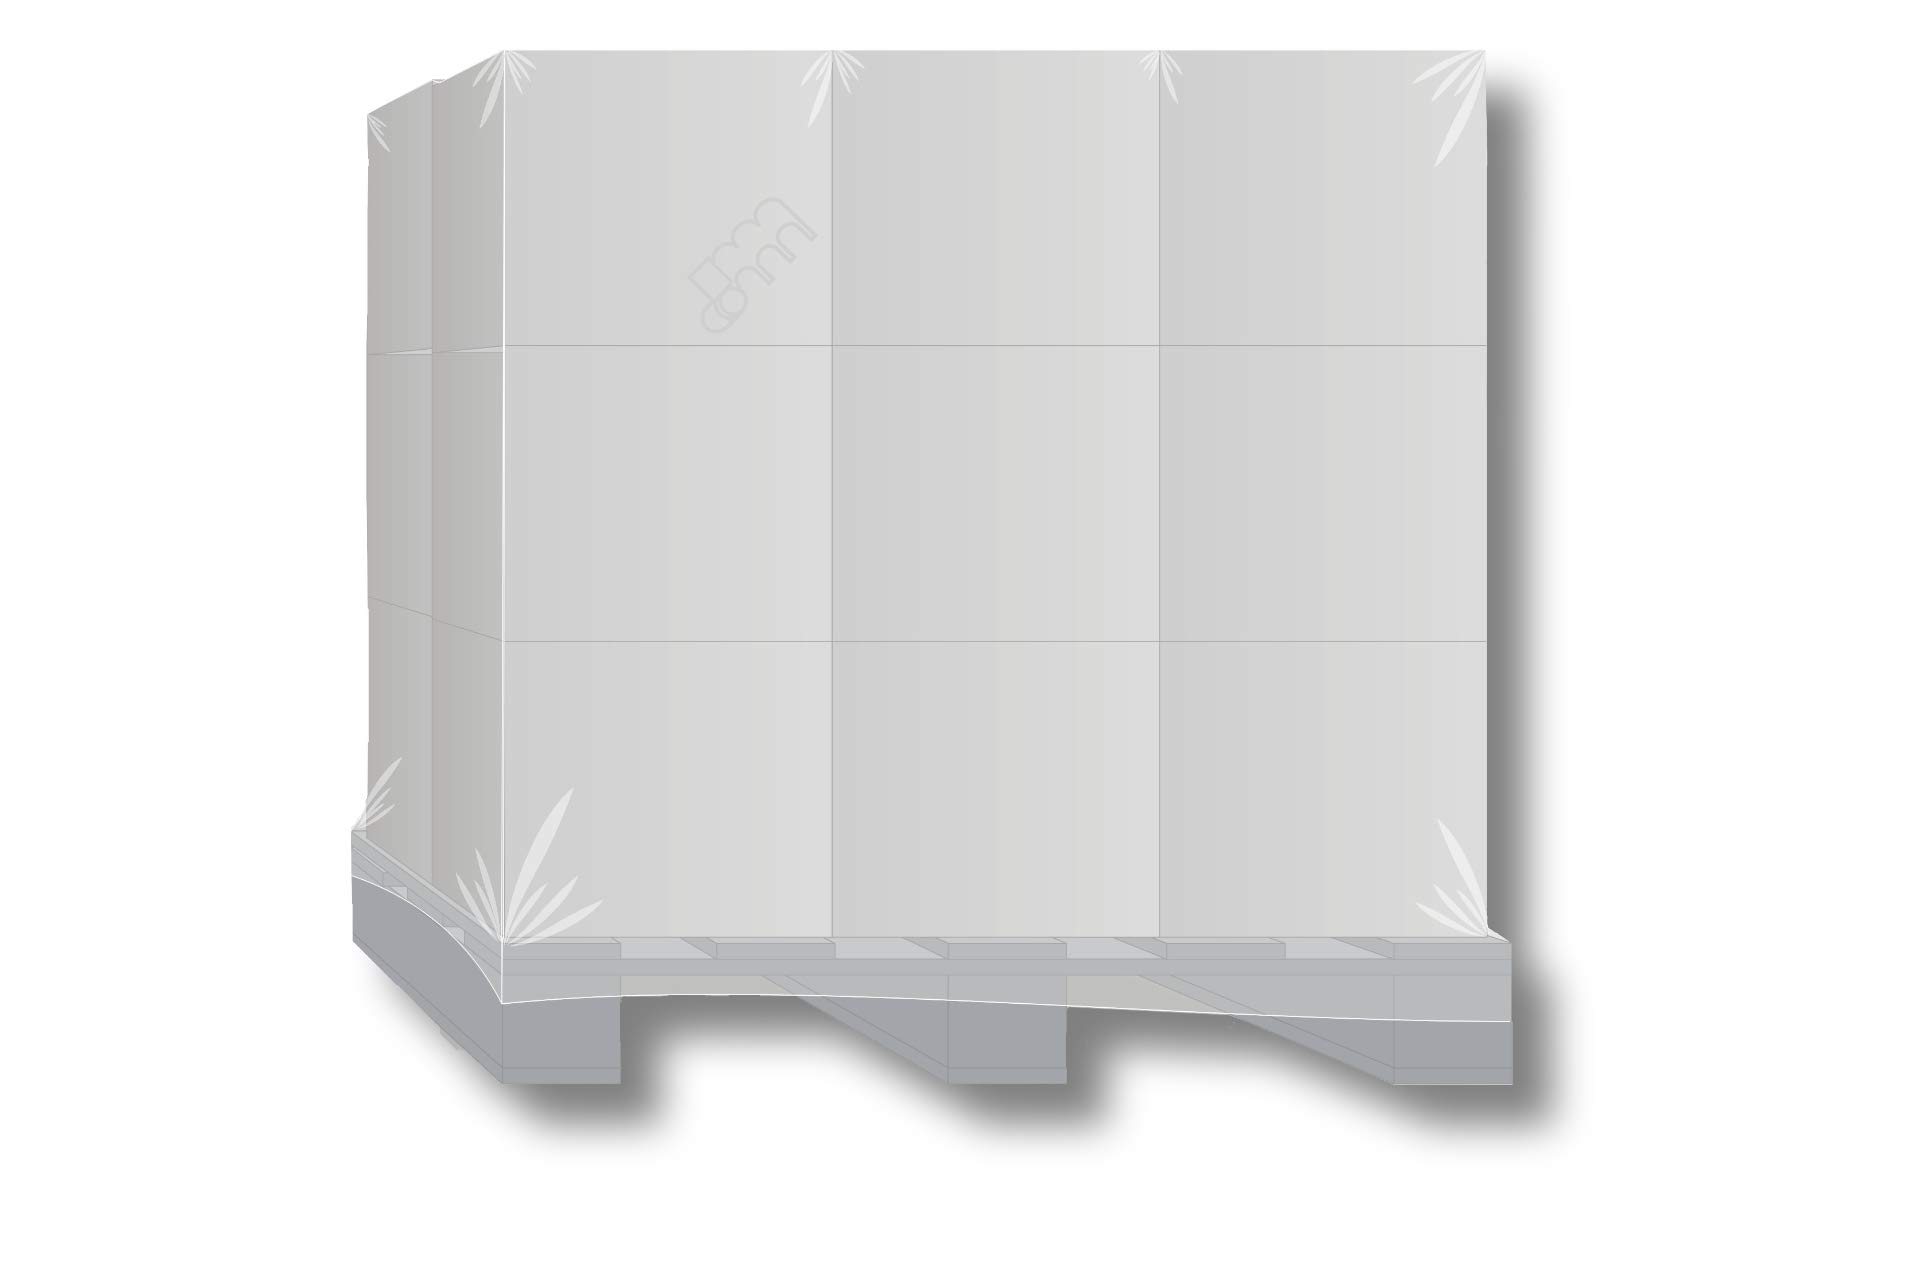 20 x PROFI Schrumpfhauben/Abdeckhauben für Paletten, Gitterboxen bis 1,25m Höhe - Extrem stabil (1250 + 850 x 1800 mm (125 my), Schwarz)